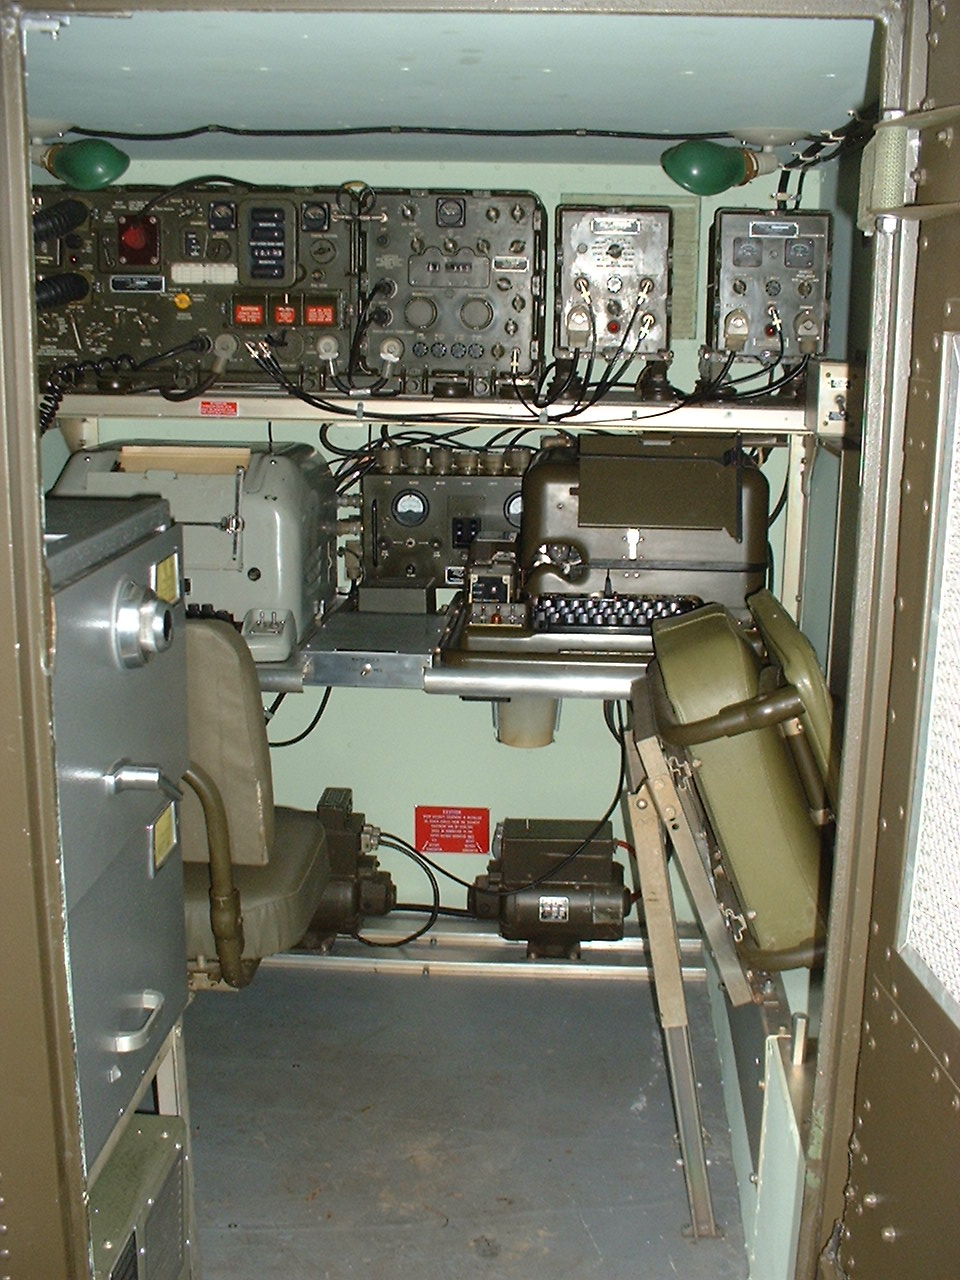 My AN/GRC-46 as seen through the shelter door